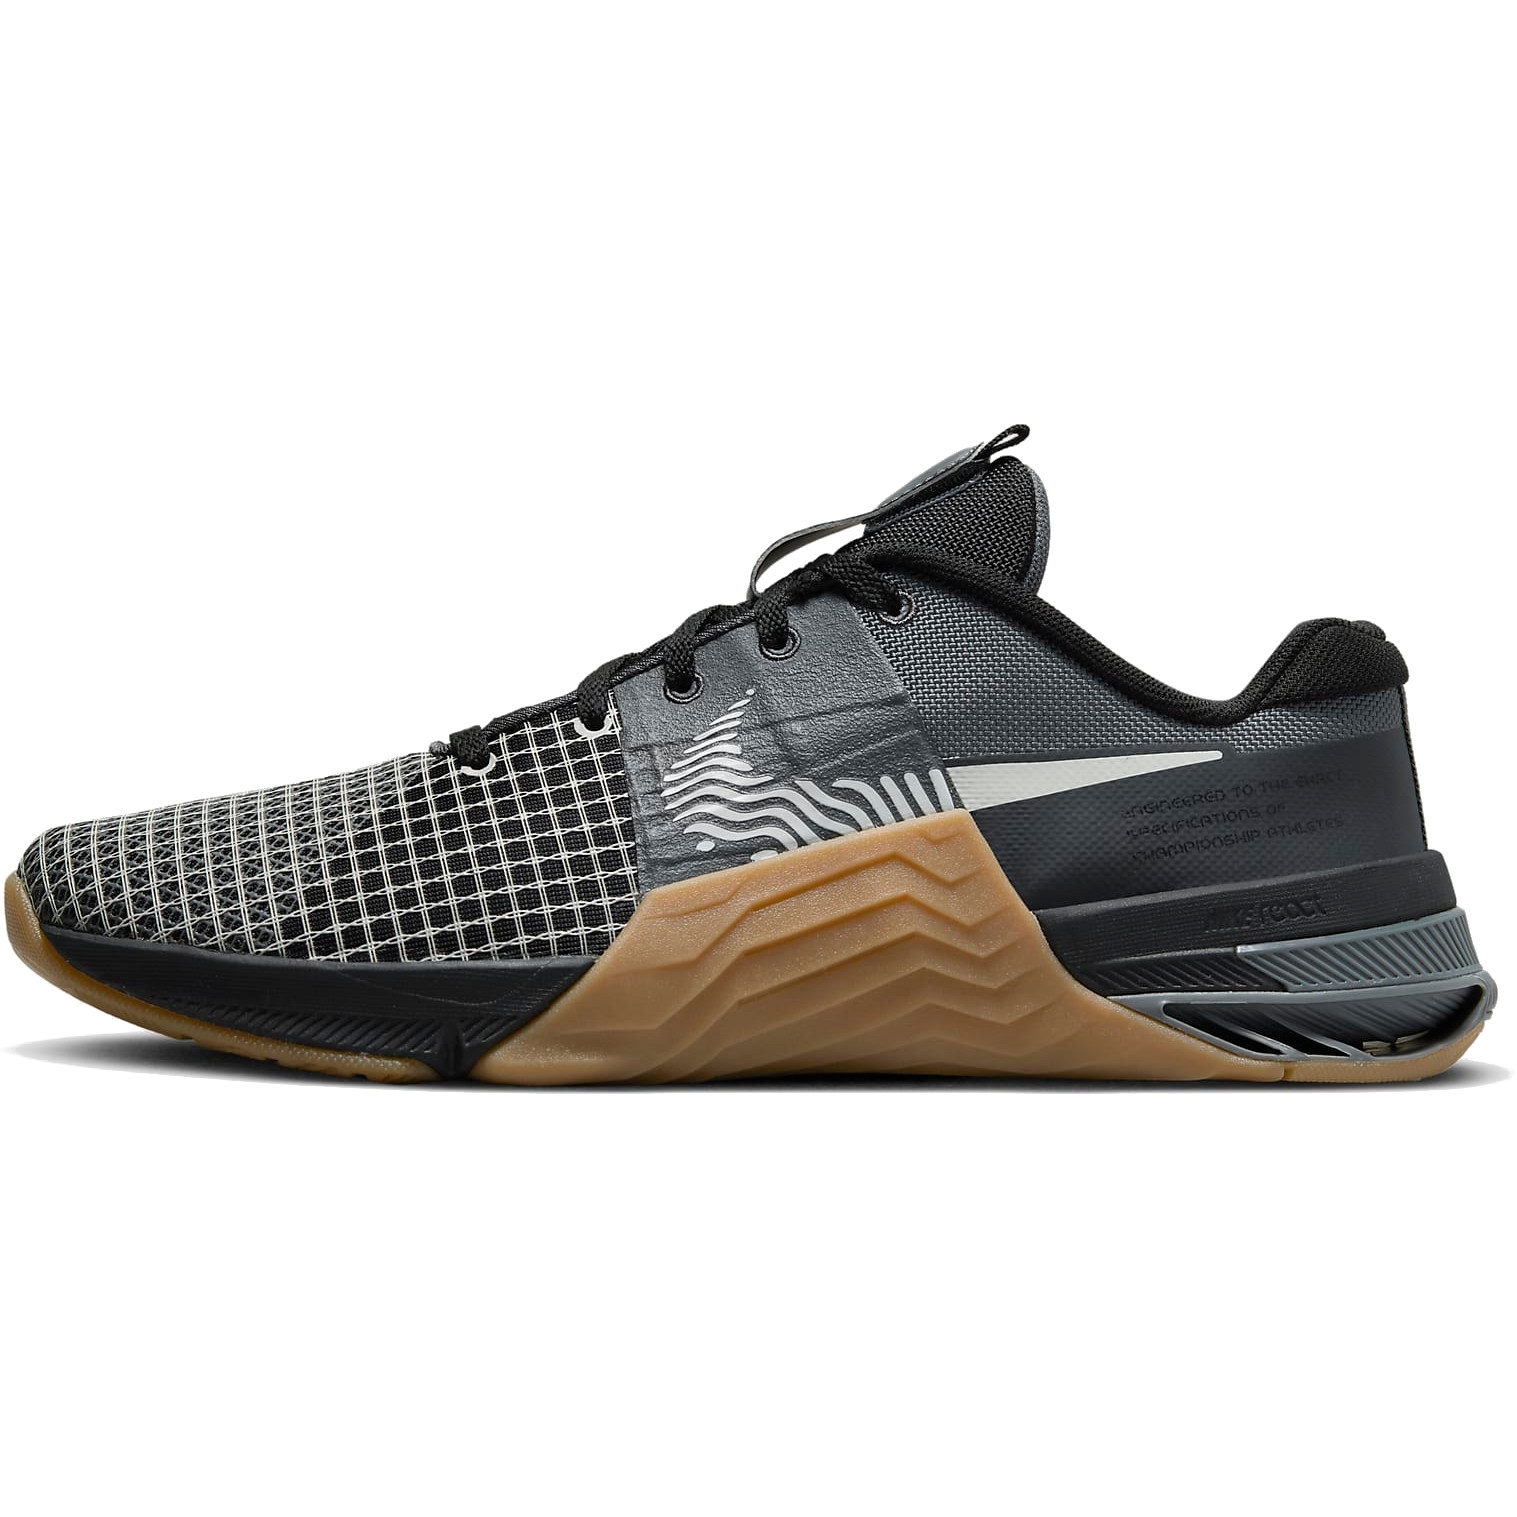 Produktbild von Nike Metcon 8 Herren-Trainingsschuh - iron grey/phantom-black-gum med brown DO9328-007